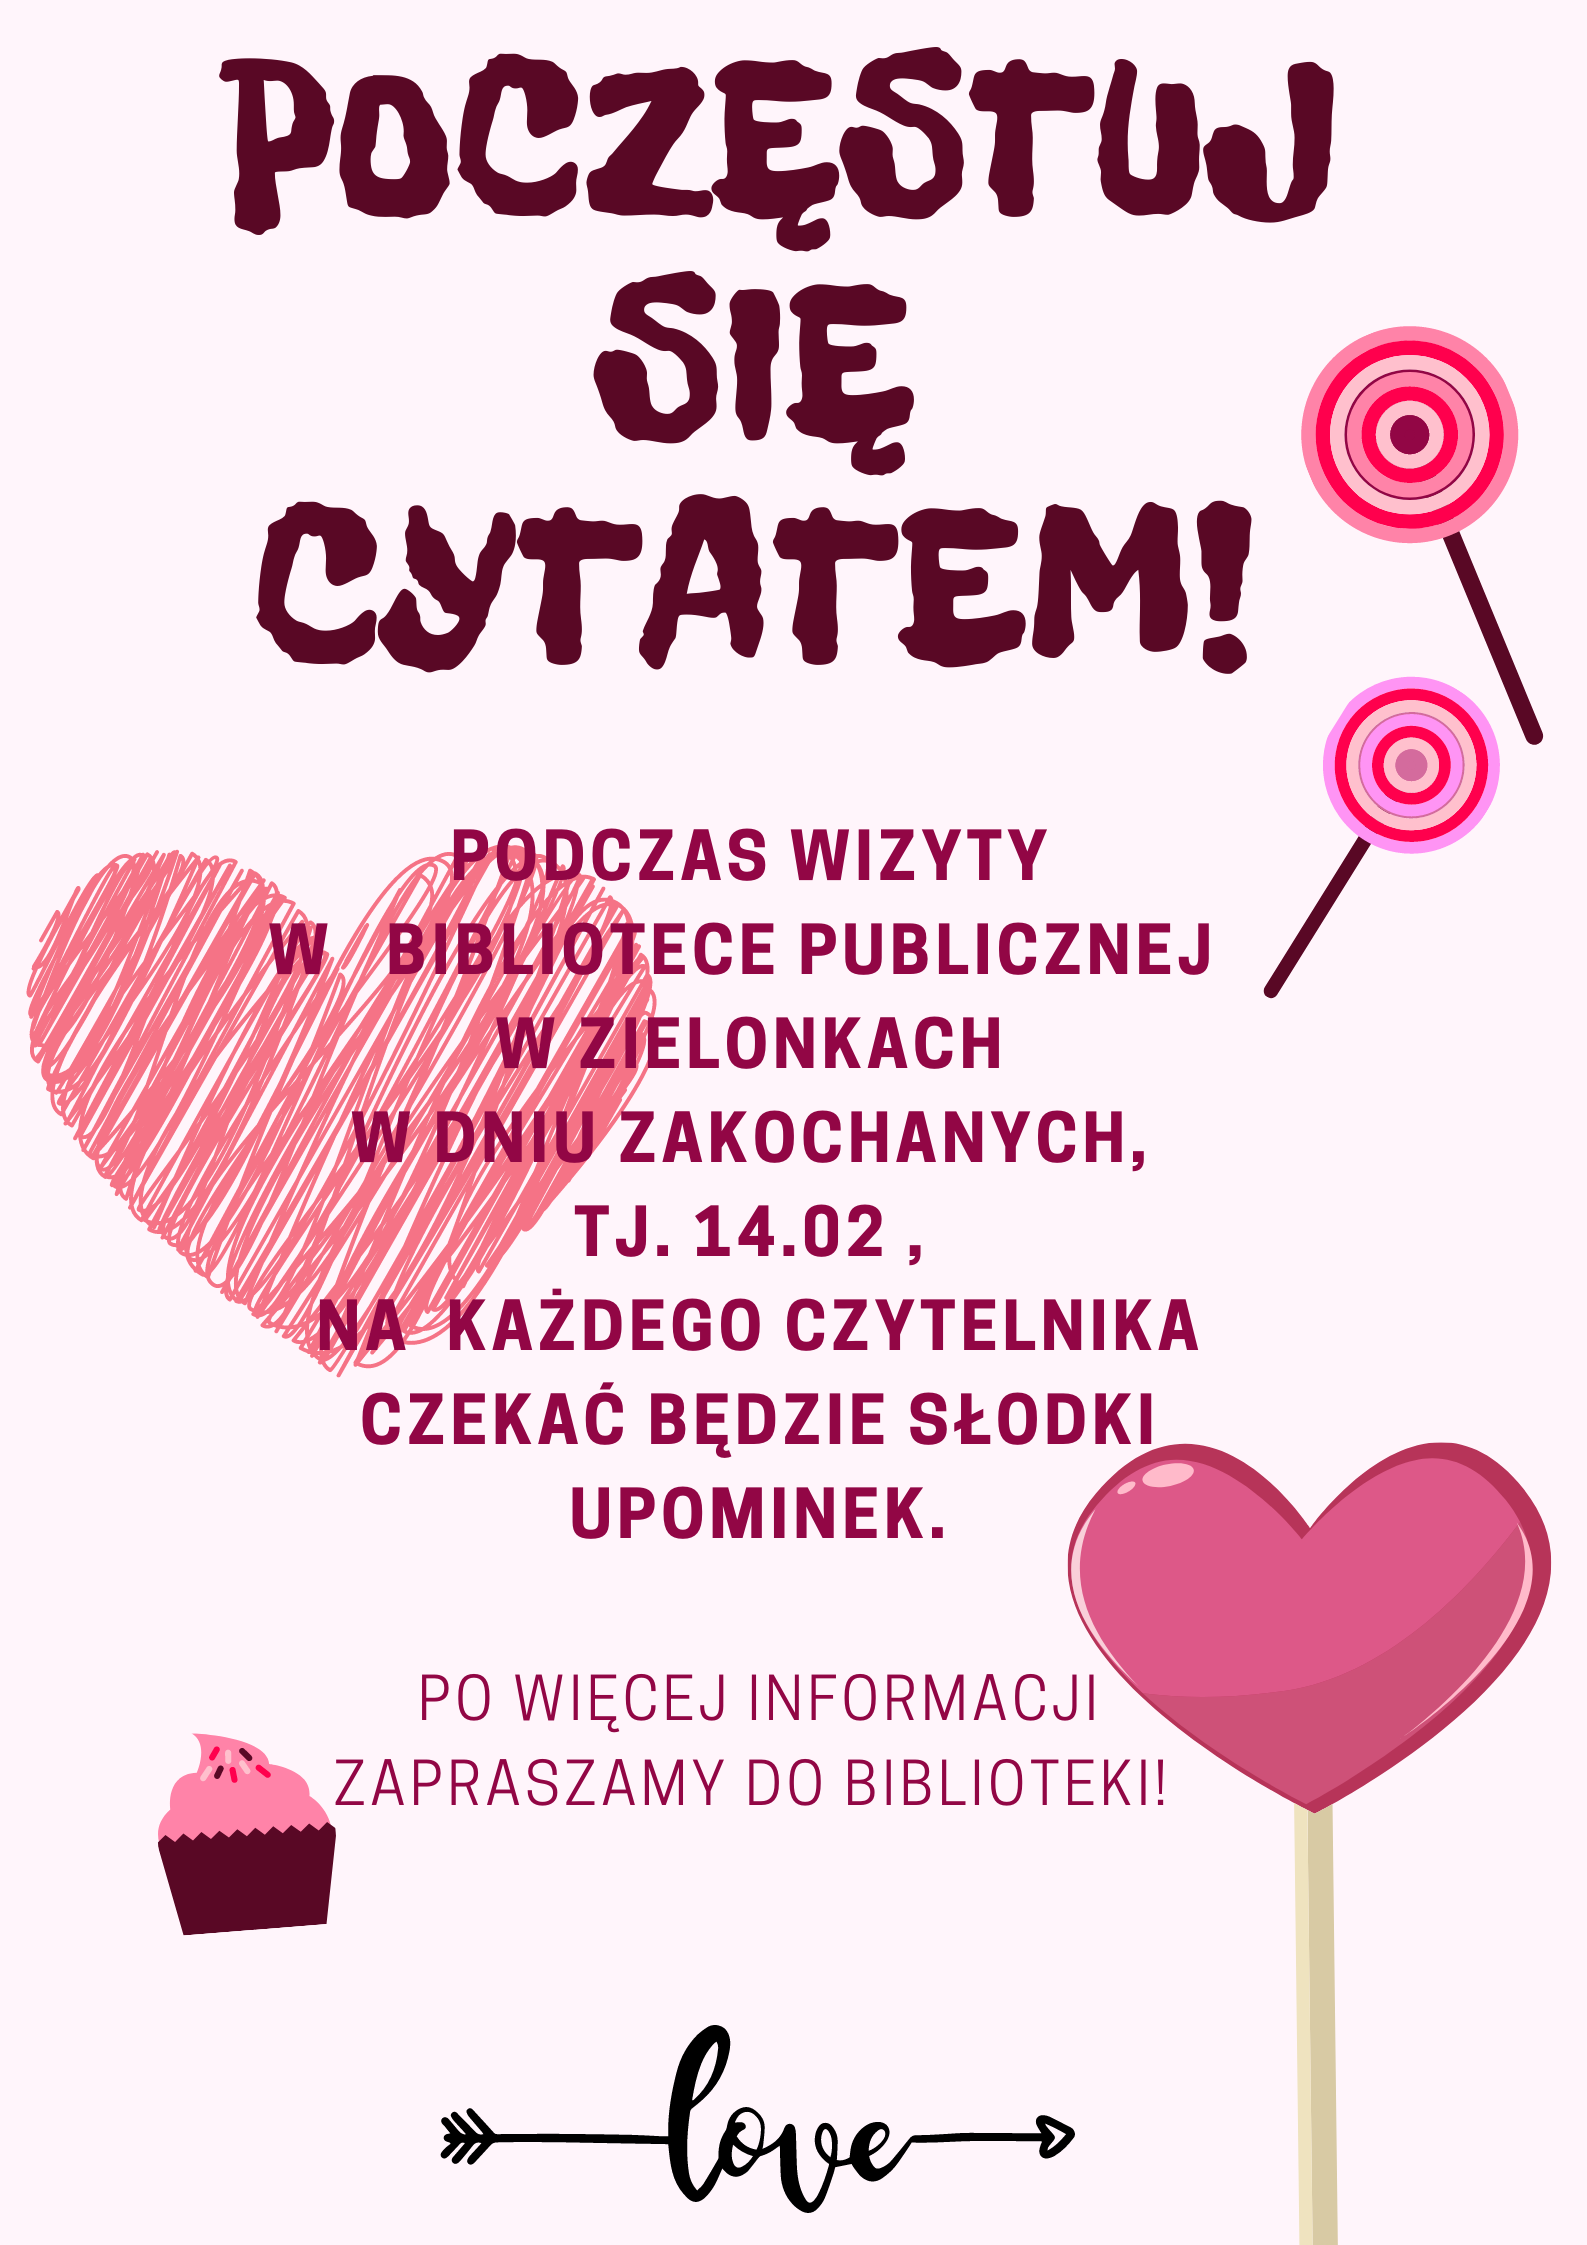 plakat informacyjny na jasnym tle różowe serca i kolorowe lizaki, zawiera informację o organizowanej przez bibliotekę akcji, każdy czytelnik który 14 lutego odwiedzi bibliotekę otrzyma słodki upominek